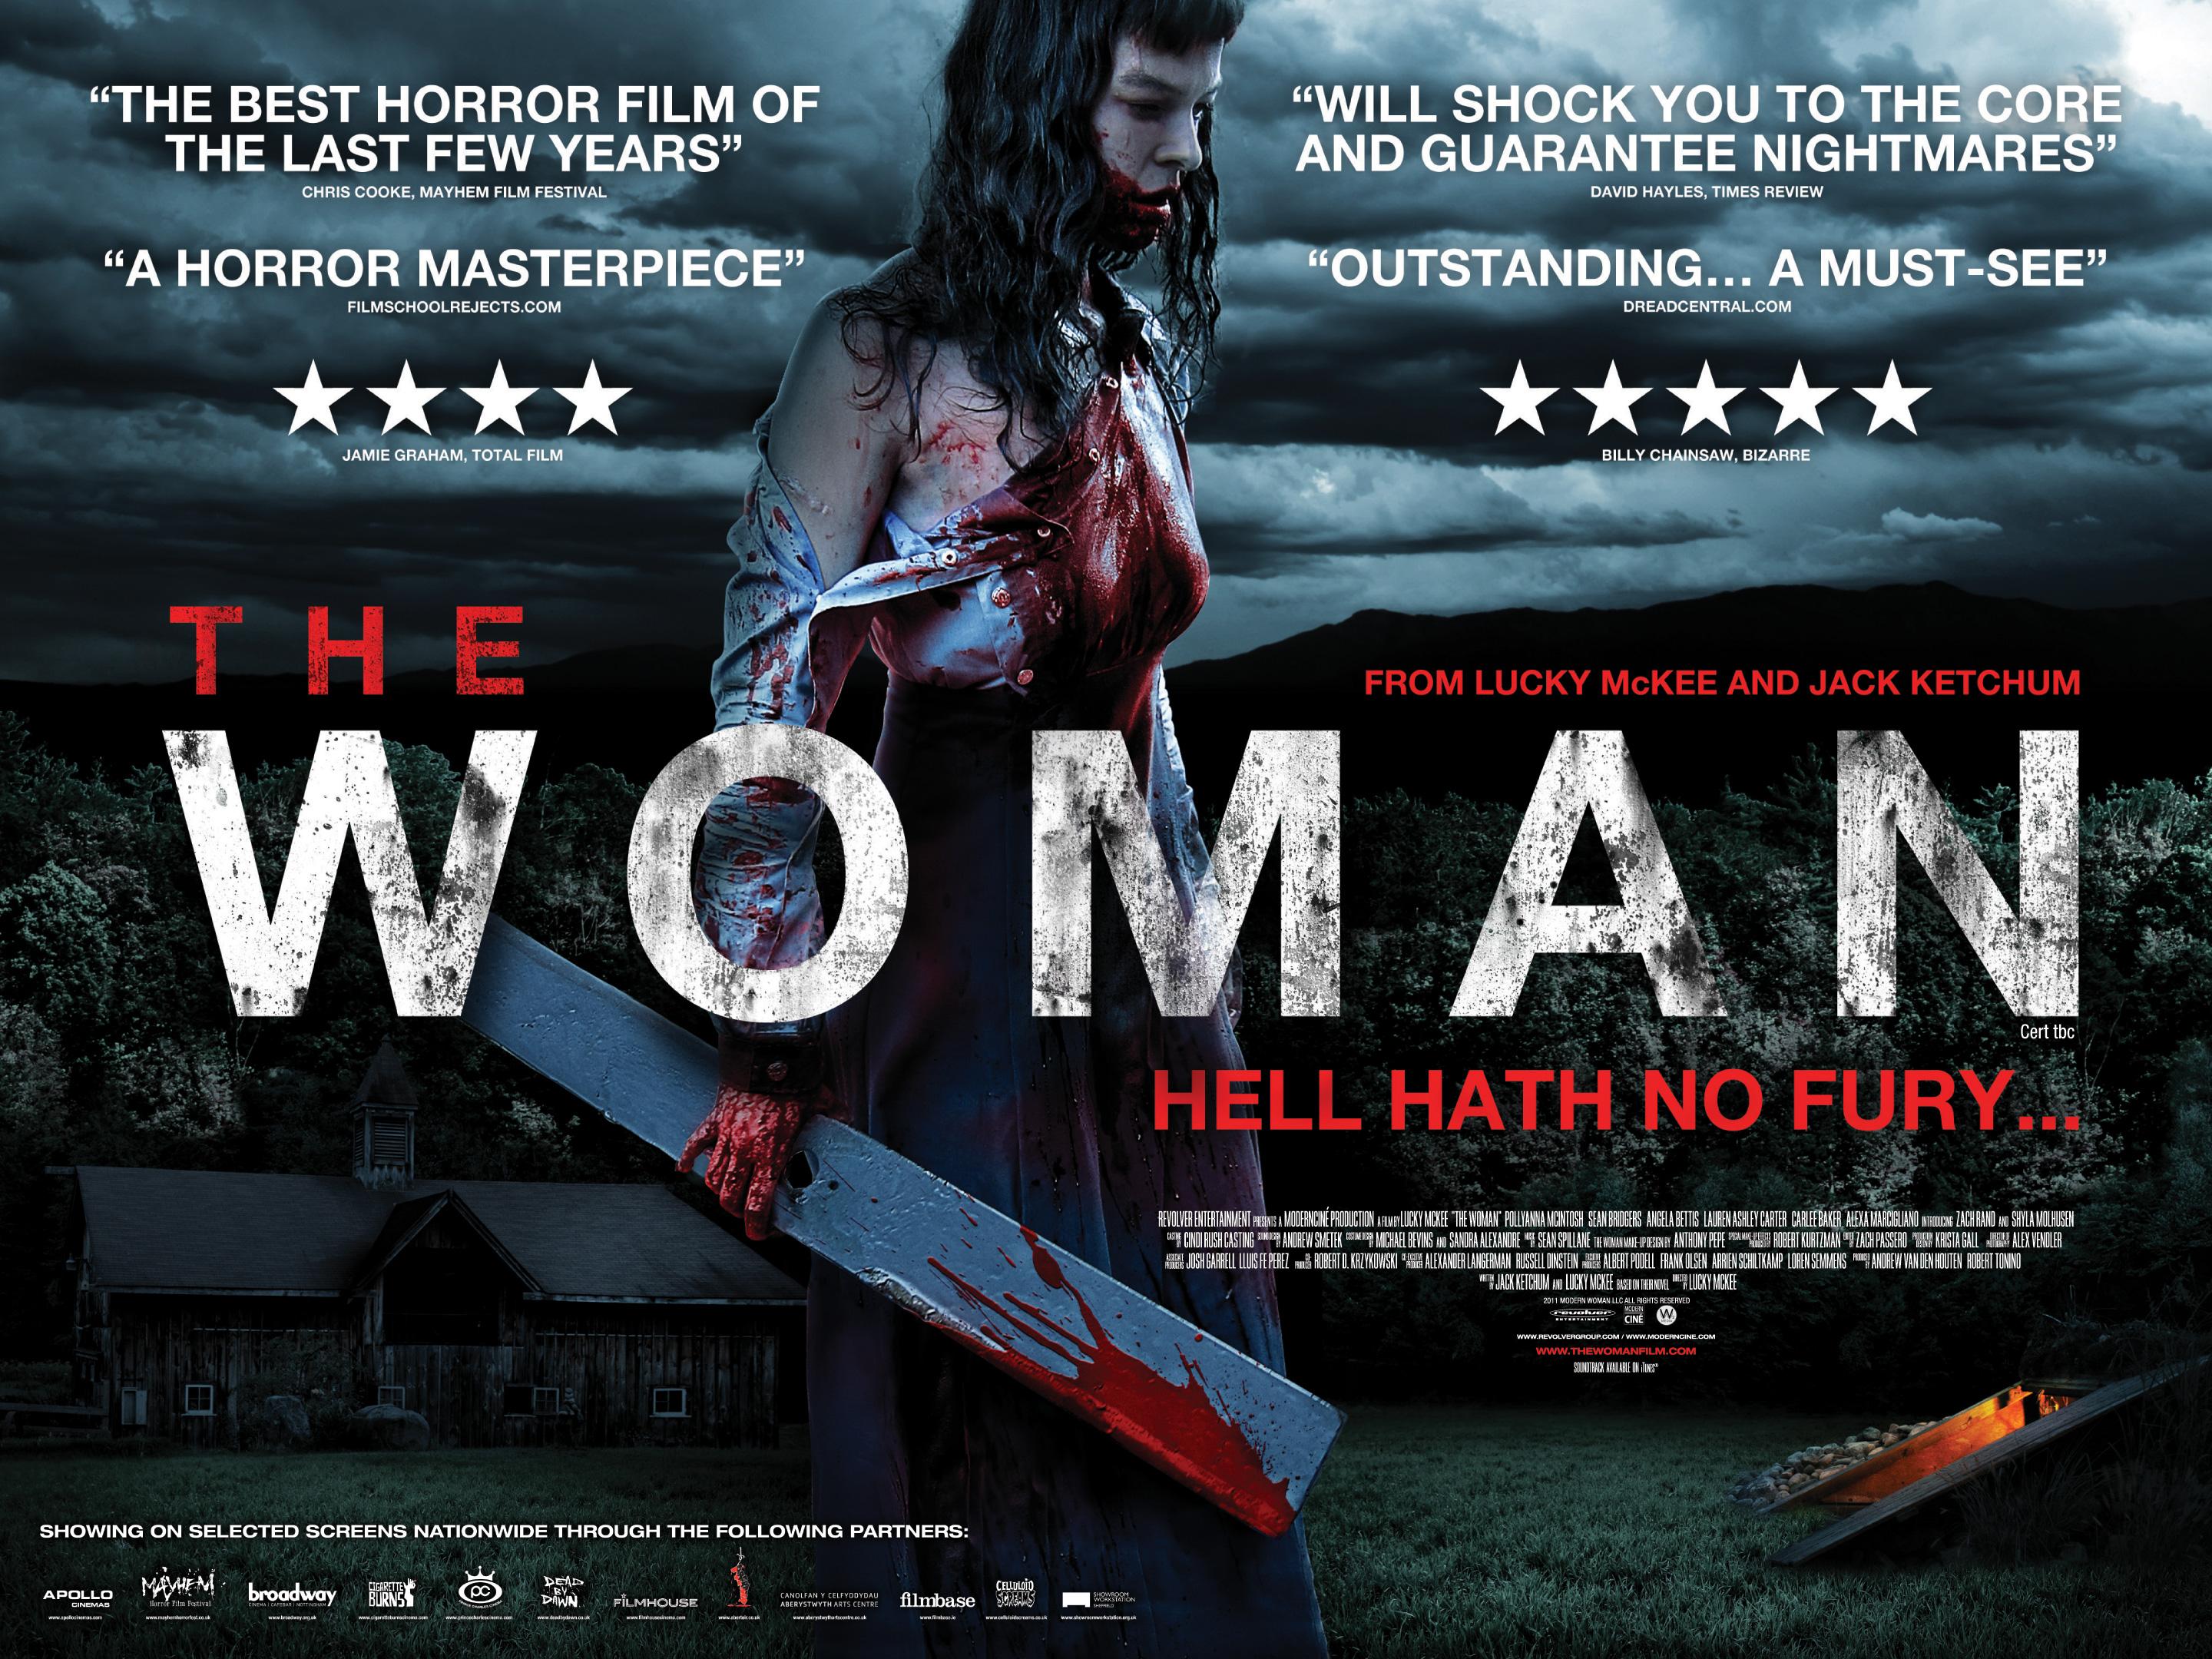 Постер фильма Женщина | Woman